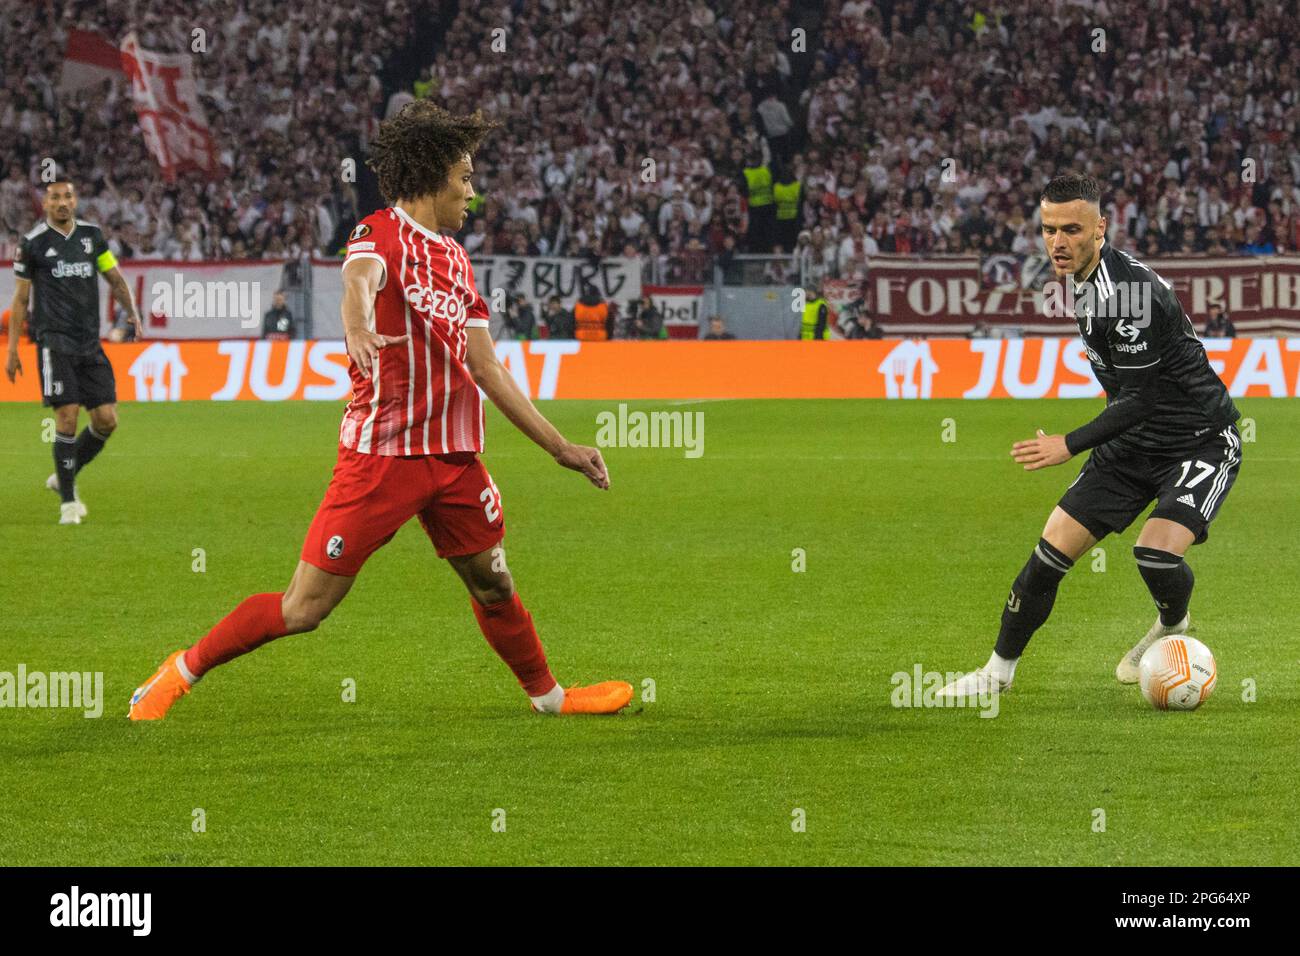 Kiliann SILDILLIA (SC Freiburg) left, tackles Filip KOSTIC (Juventus Turin) Stock Photo